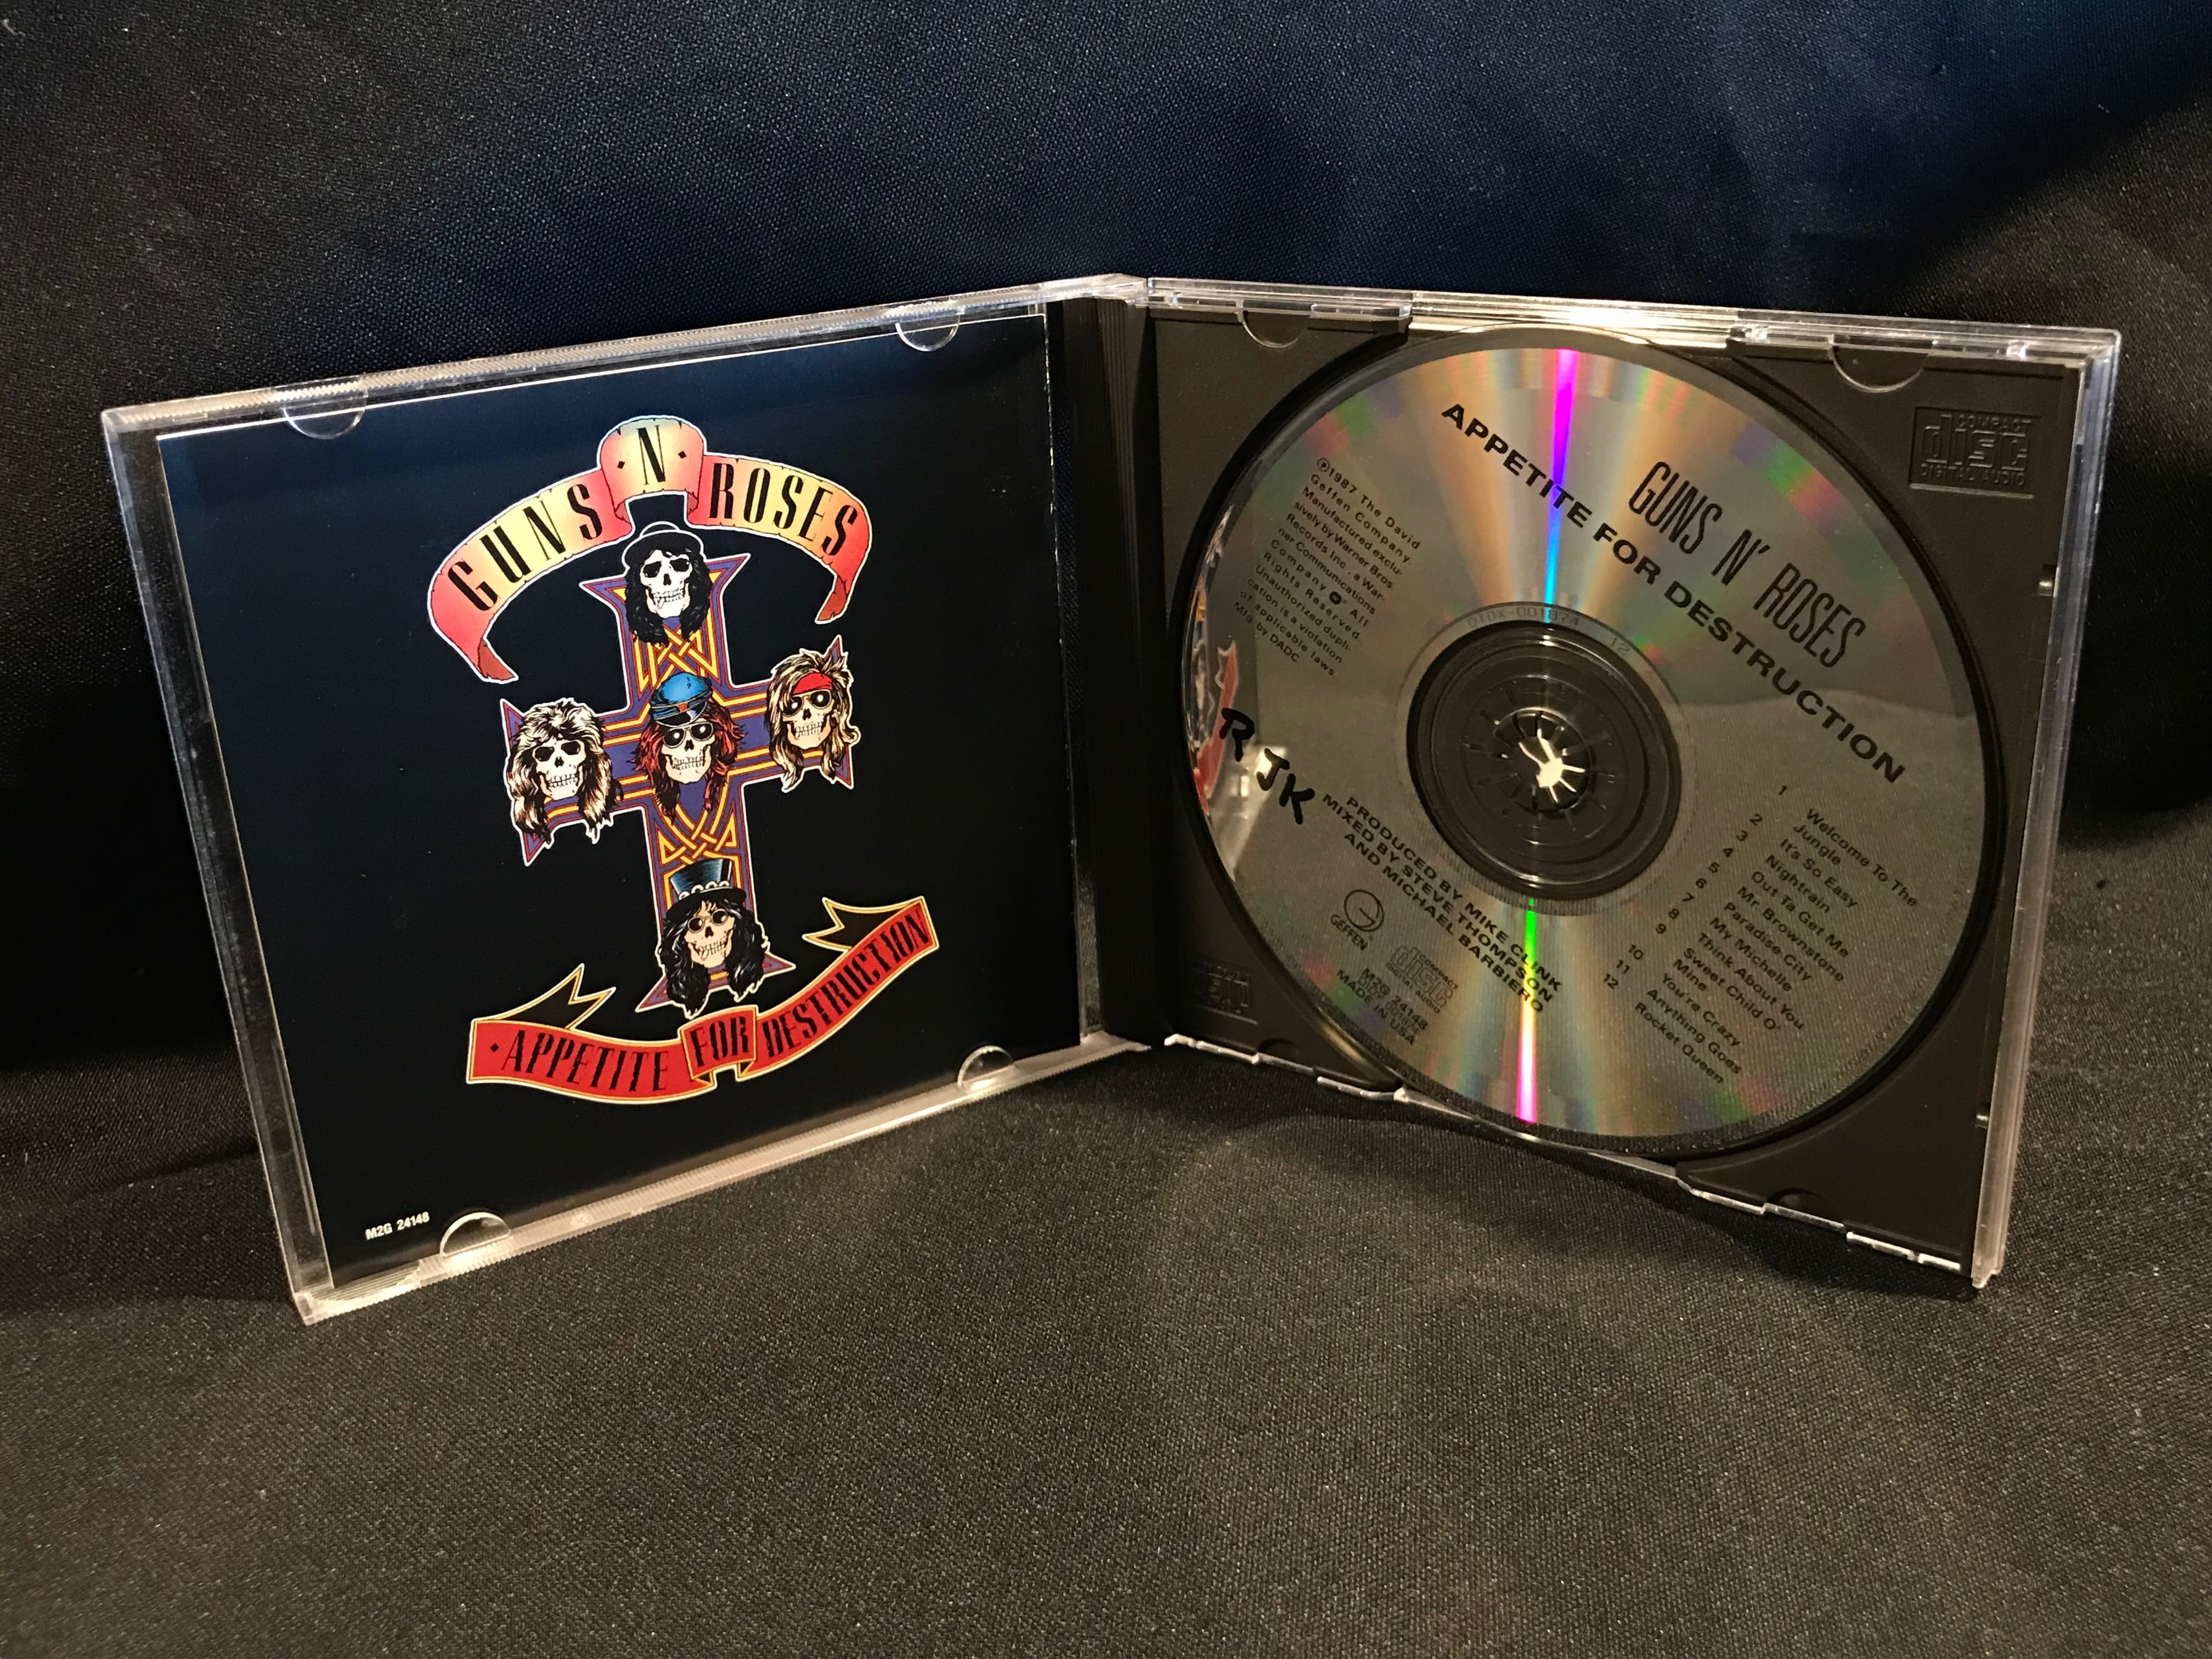 Guns N Roses Appetite for Destruction CD From 1987 